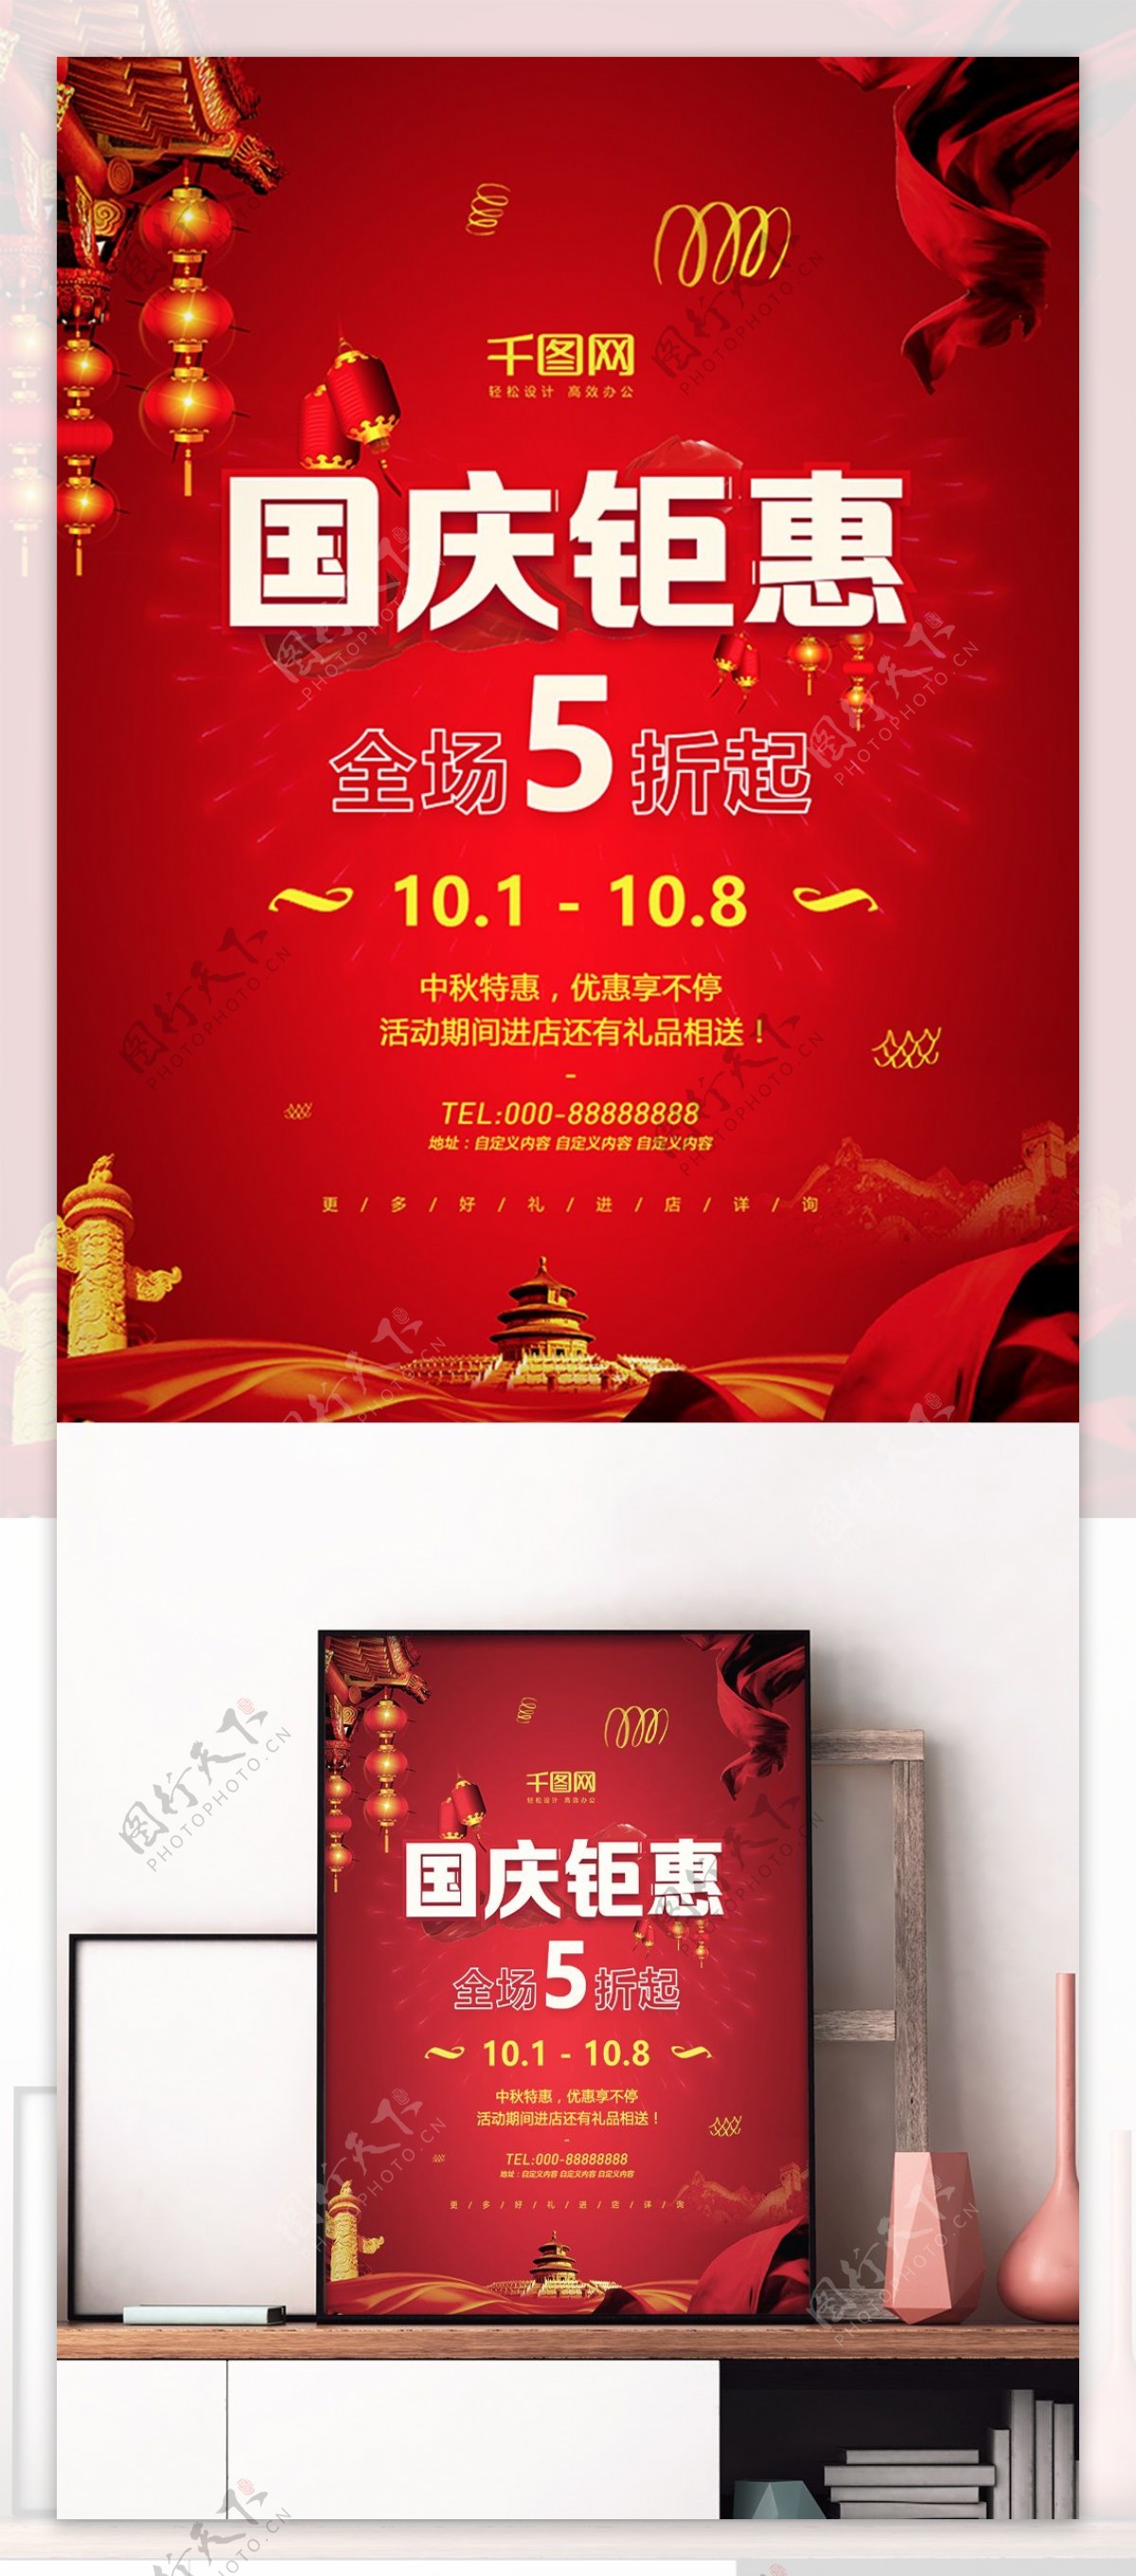 红黄色喜庆大气国庆钜惠商场节日促销海报